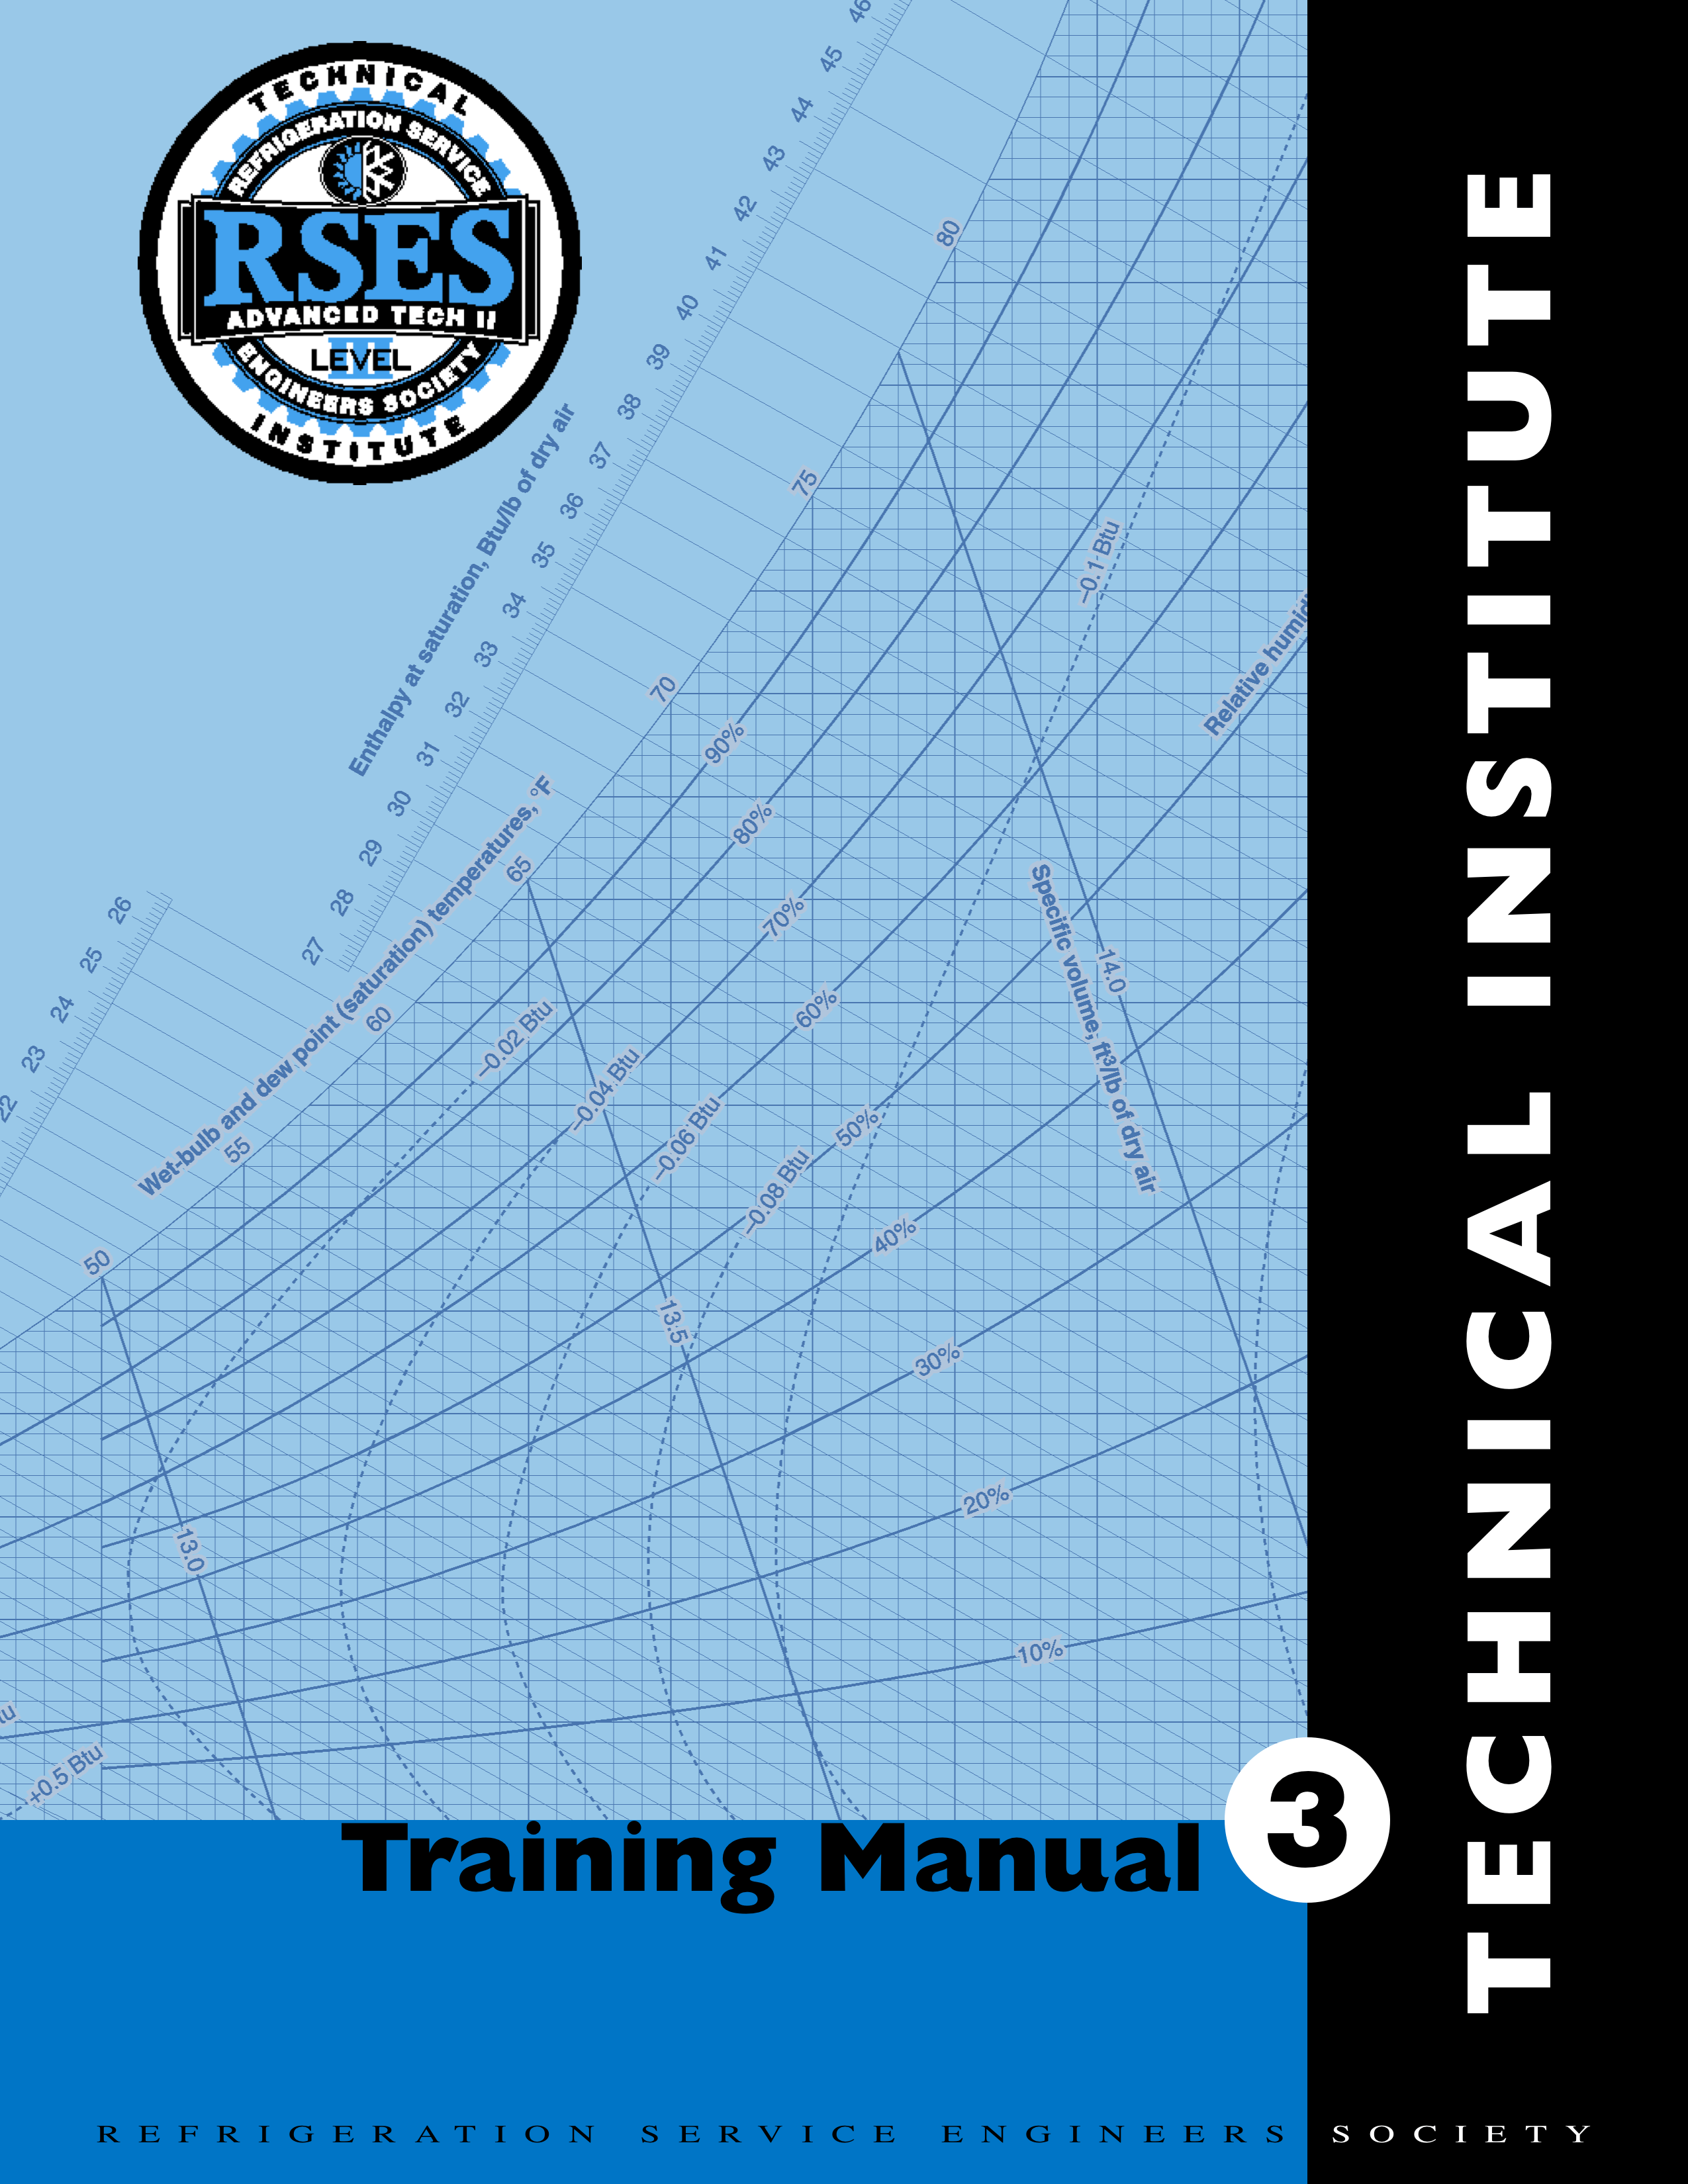 RSES Technical Institute Training Manual 3